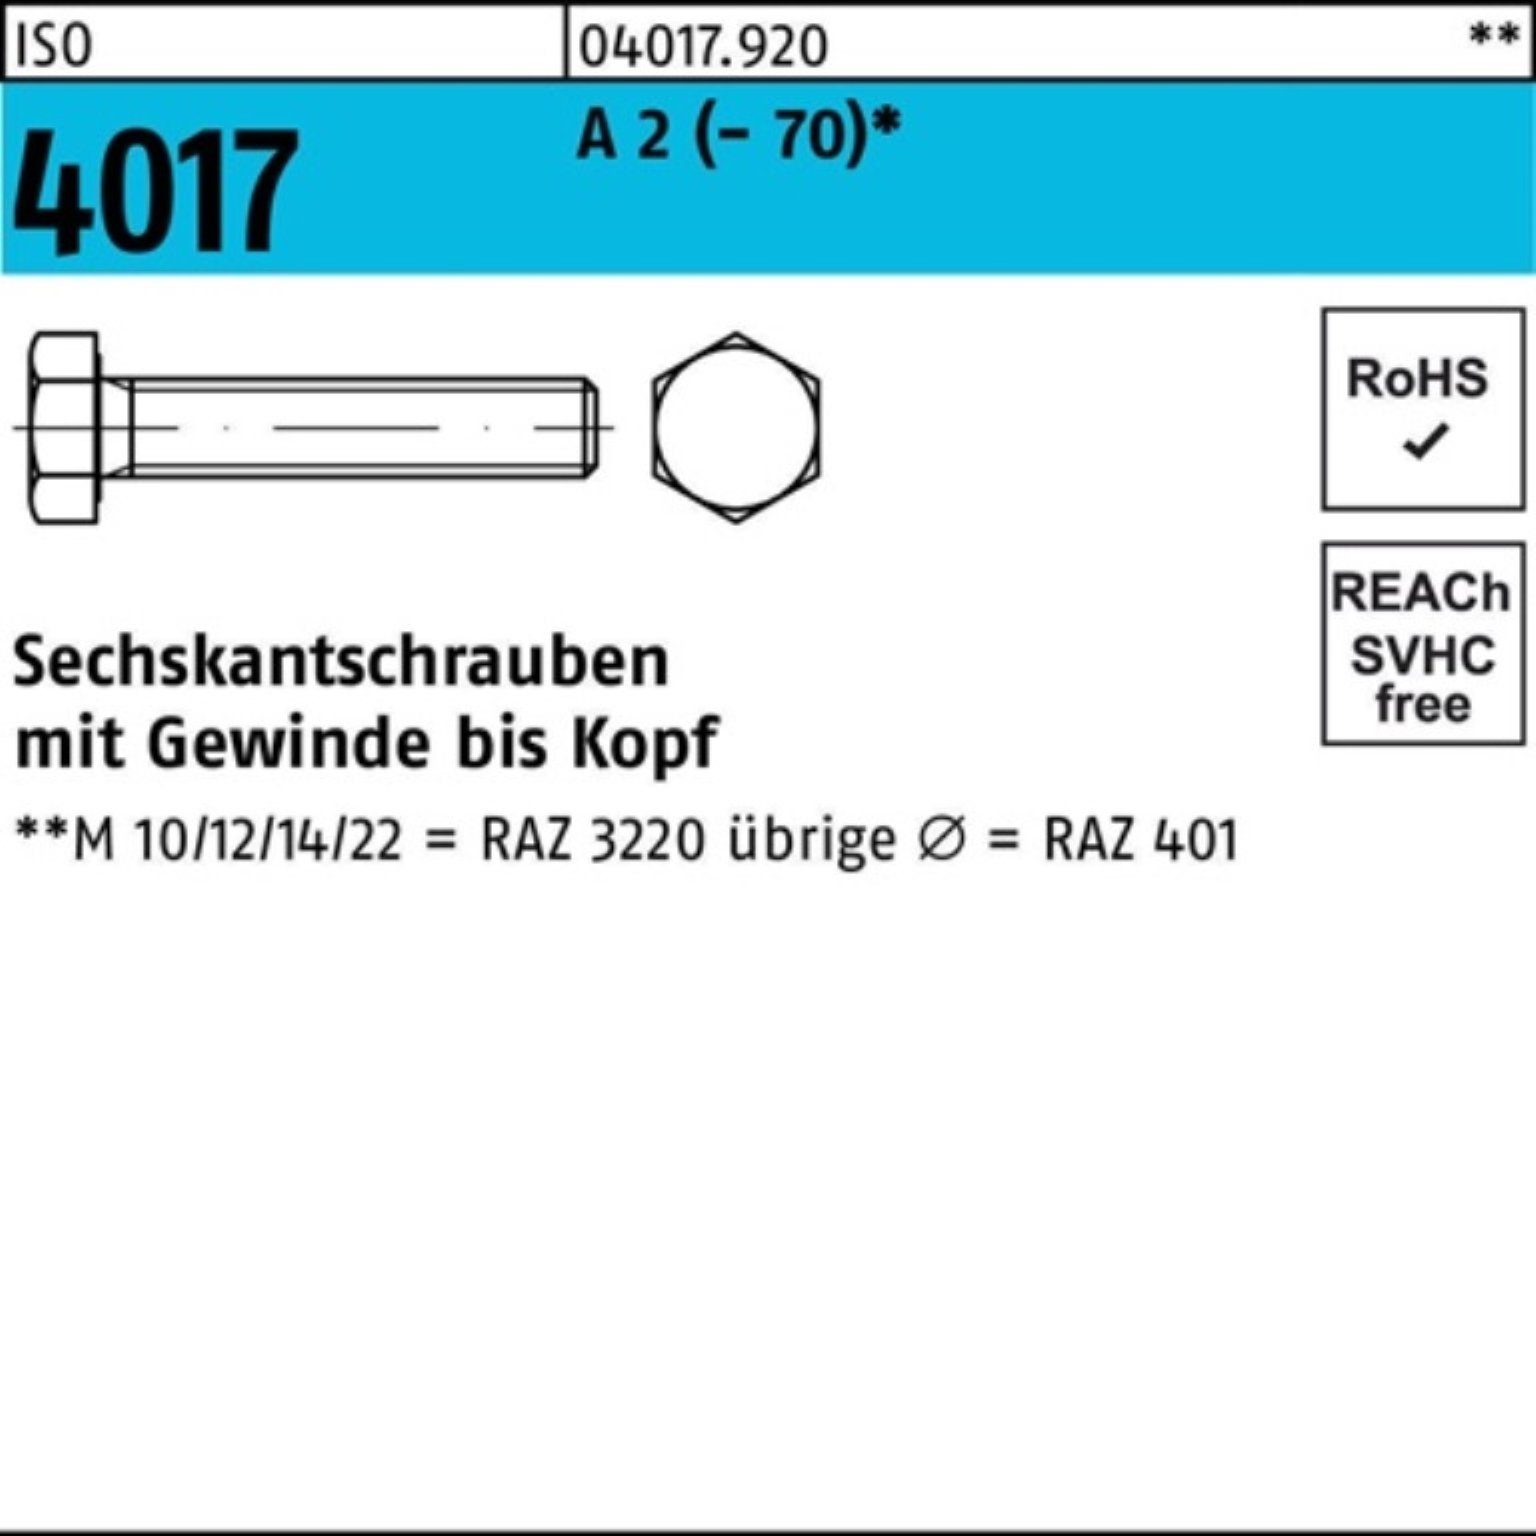 Bufab Sechskantschraube 100er Pack 2 A 1 4017 170 ISO Sechskantschraube VG M12x Stück (70)